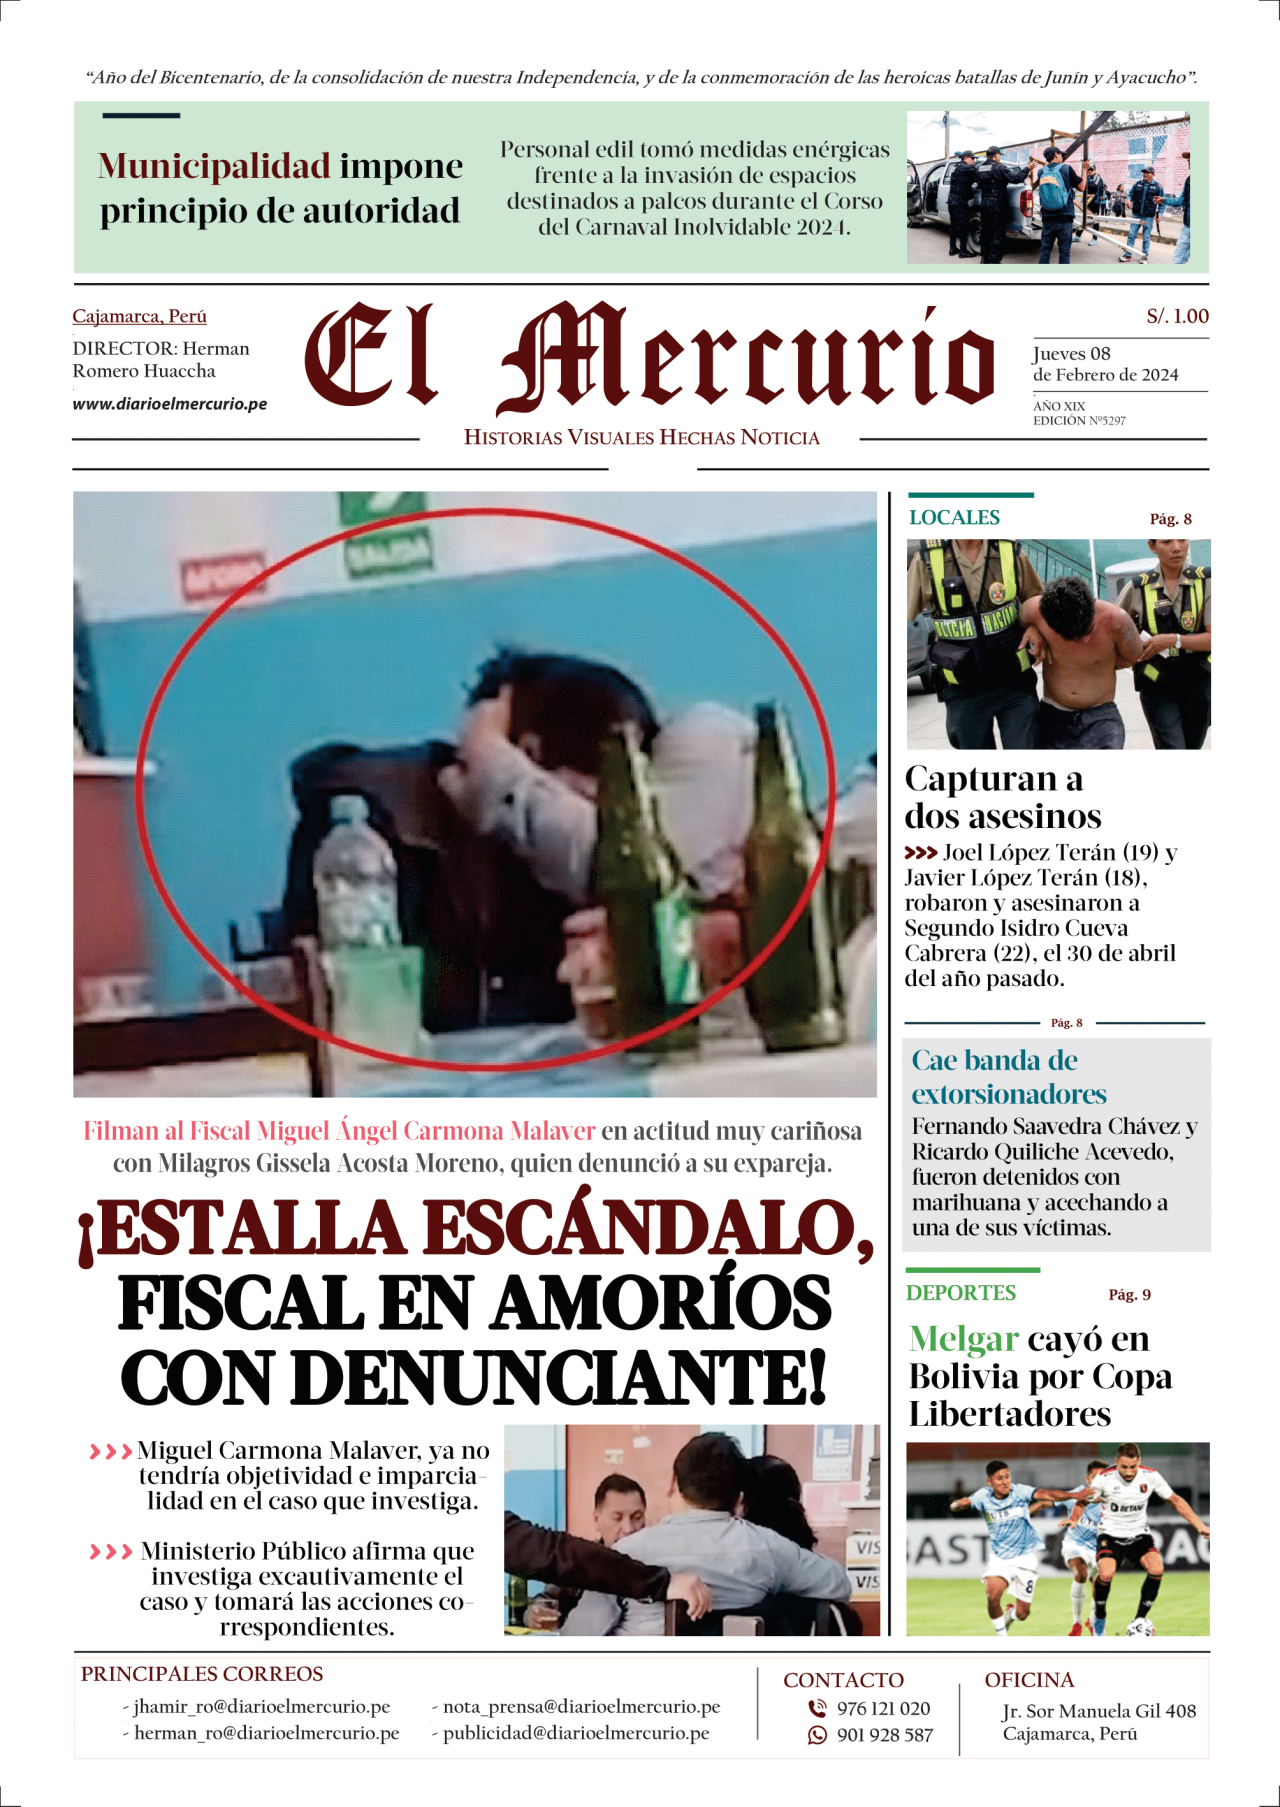 EL-MERCURIO-EDICION-JUEVES-08-DE-FEBRERO-2024-01-1280x1807.png